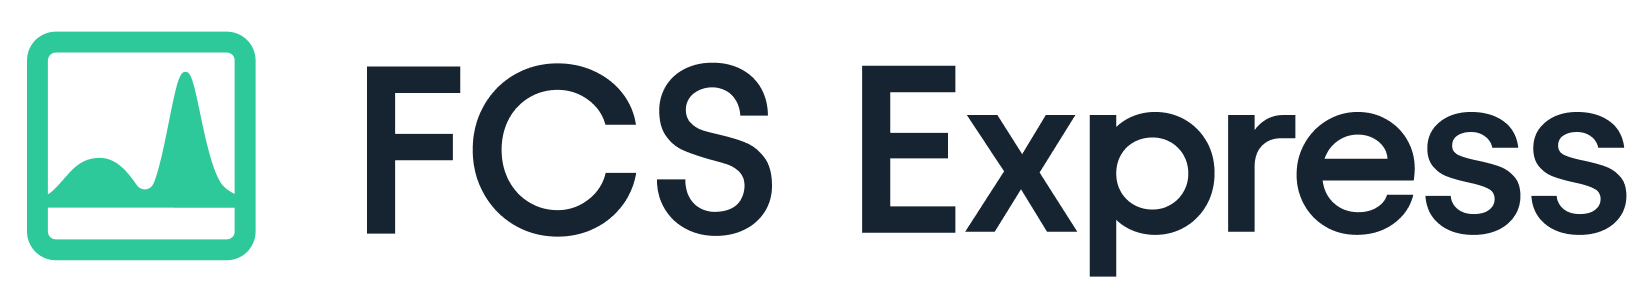 FCSExpress-Logo-Dark